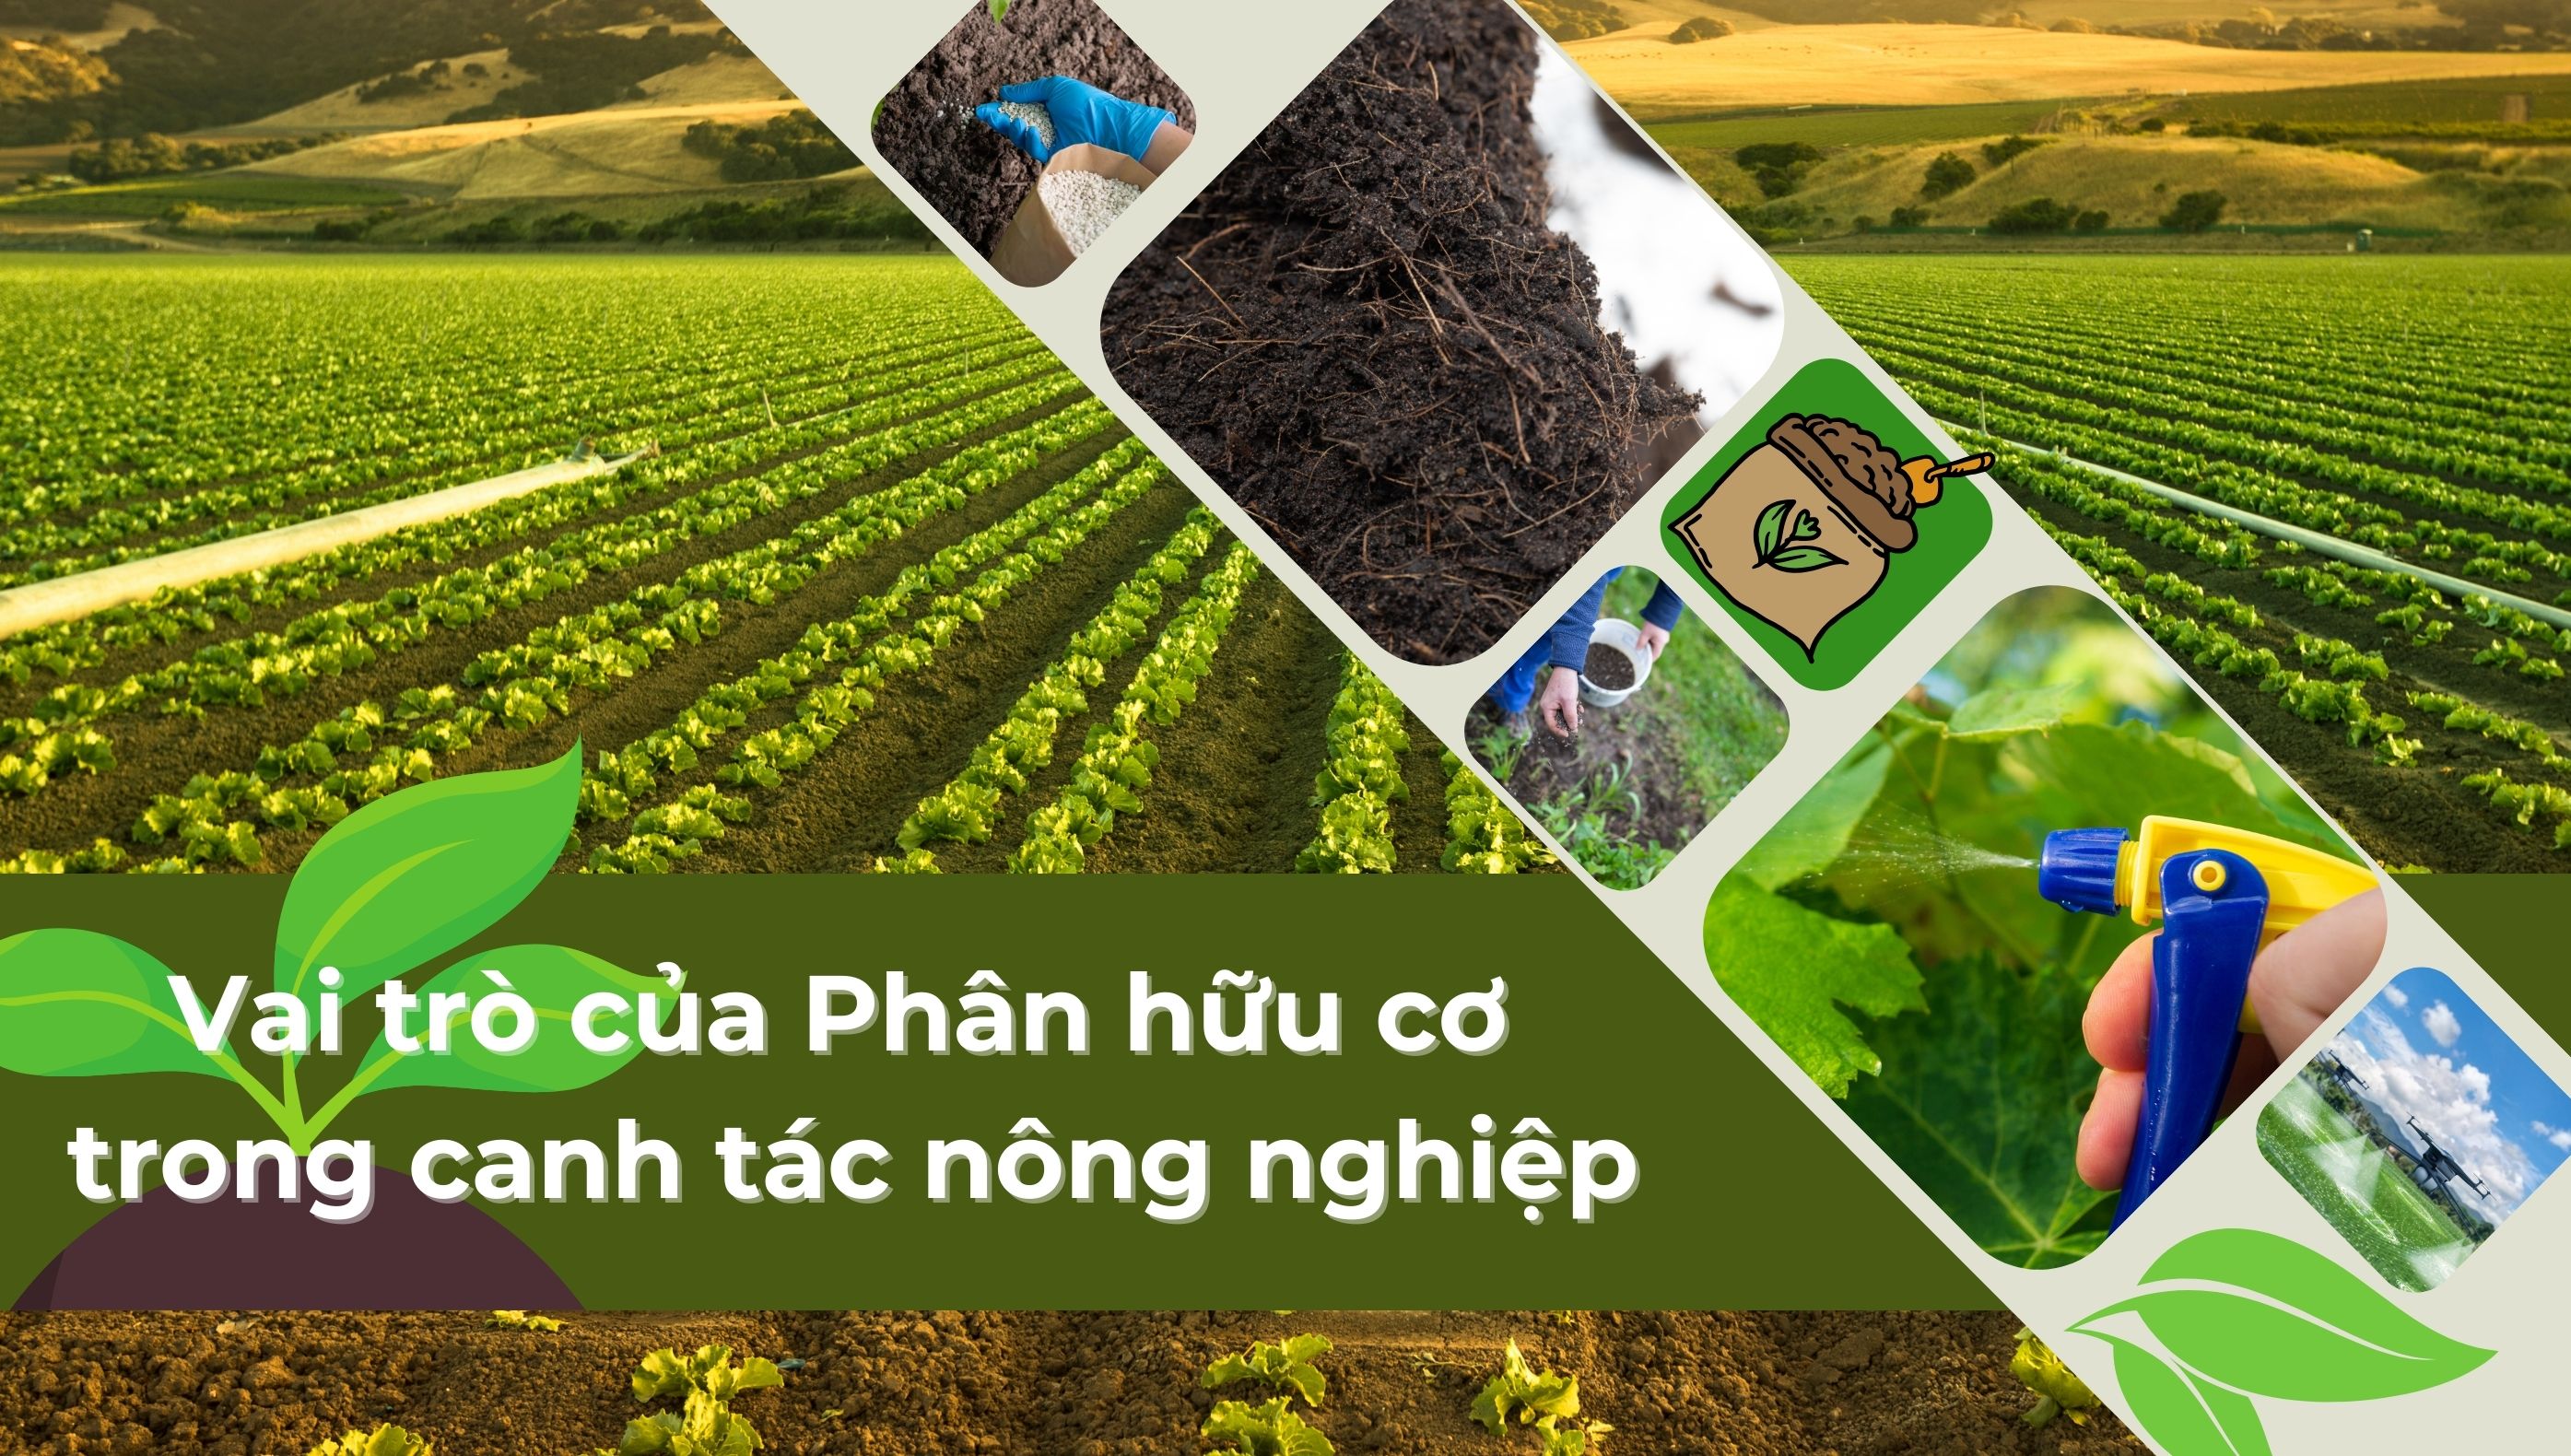 Chất hữu cơ - Tầm quan trọng của chất hữu cơ trong đất đối với sức khoẻ đất và cây trồng